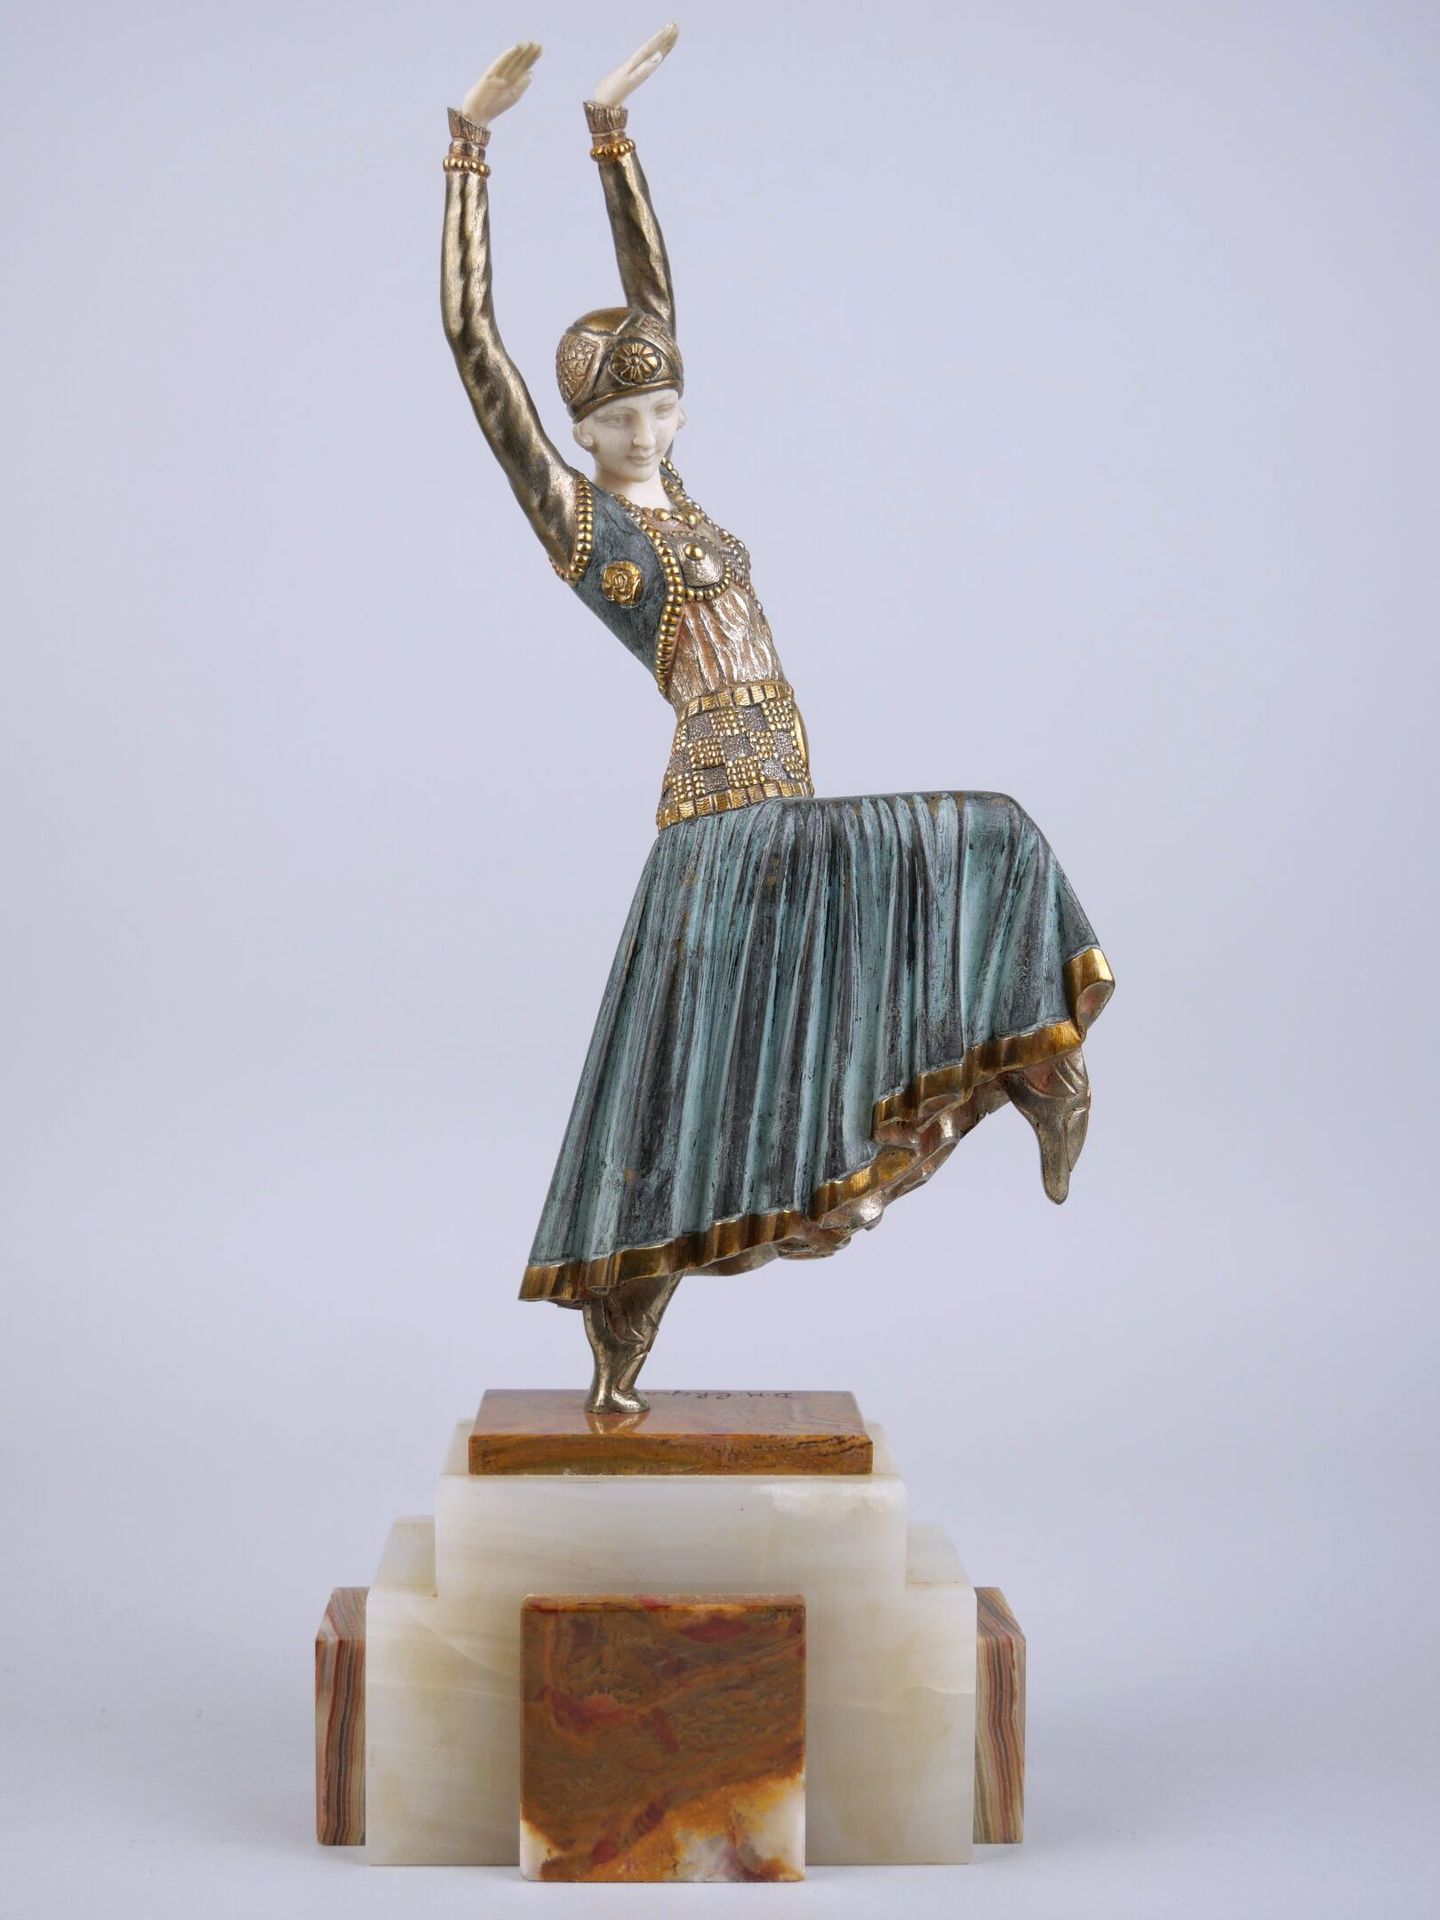 Null 德梅特-奇帕鲁斯（1886-1947）
俄罗斯舞者与马甲 
银色、绿色和象牙色鎏金青铜雕像，底座上有签名。 
阿尔及利亚缟玛瑙台阶底座。
高：25.5&hellip;